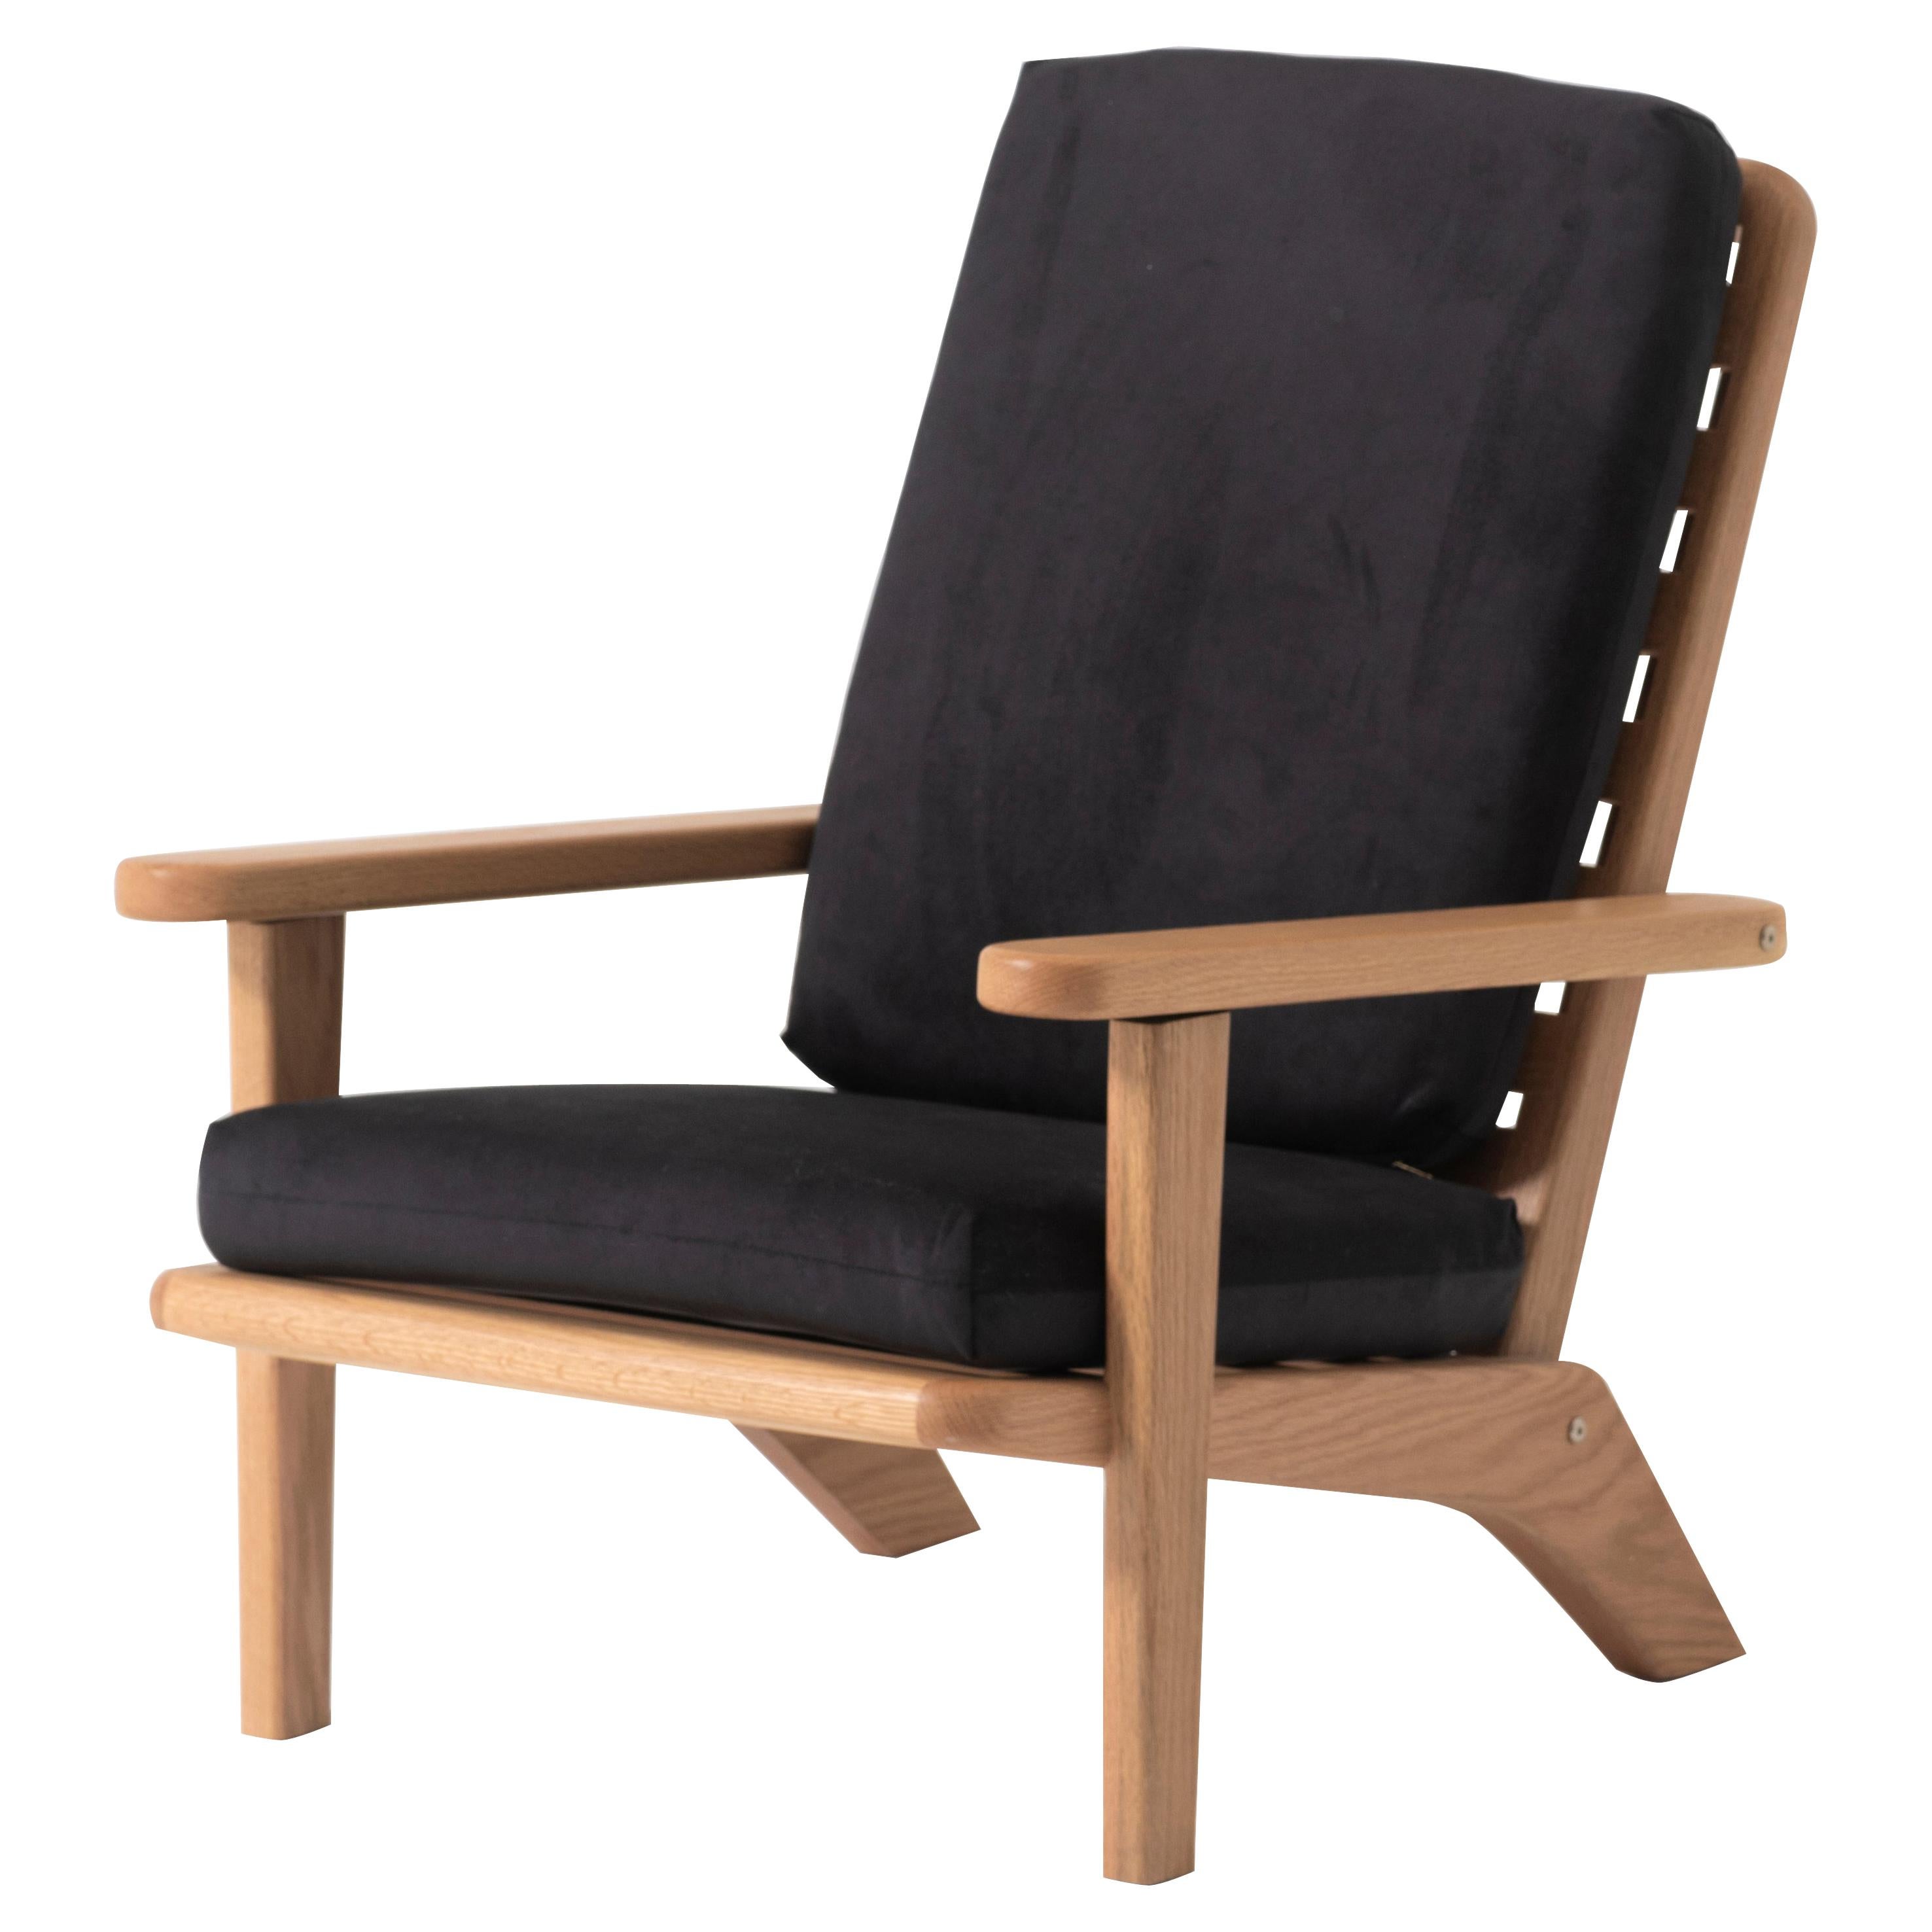 Chaise longue en Oak Wood massif avec coussin en textile noir et dossier inclinable en vente